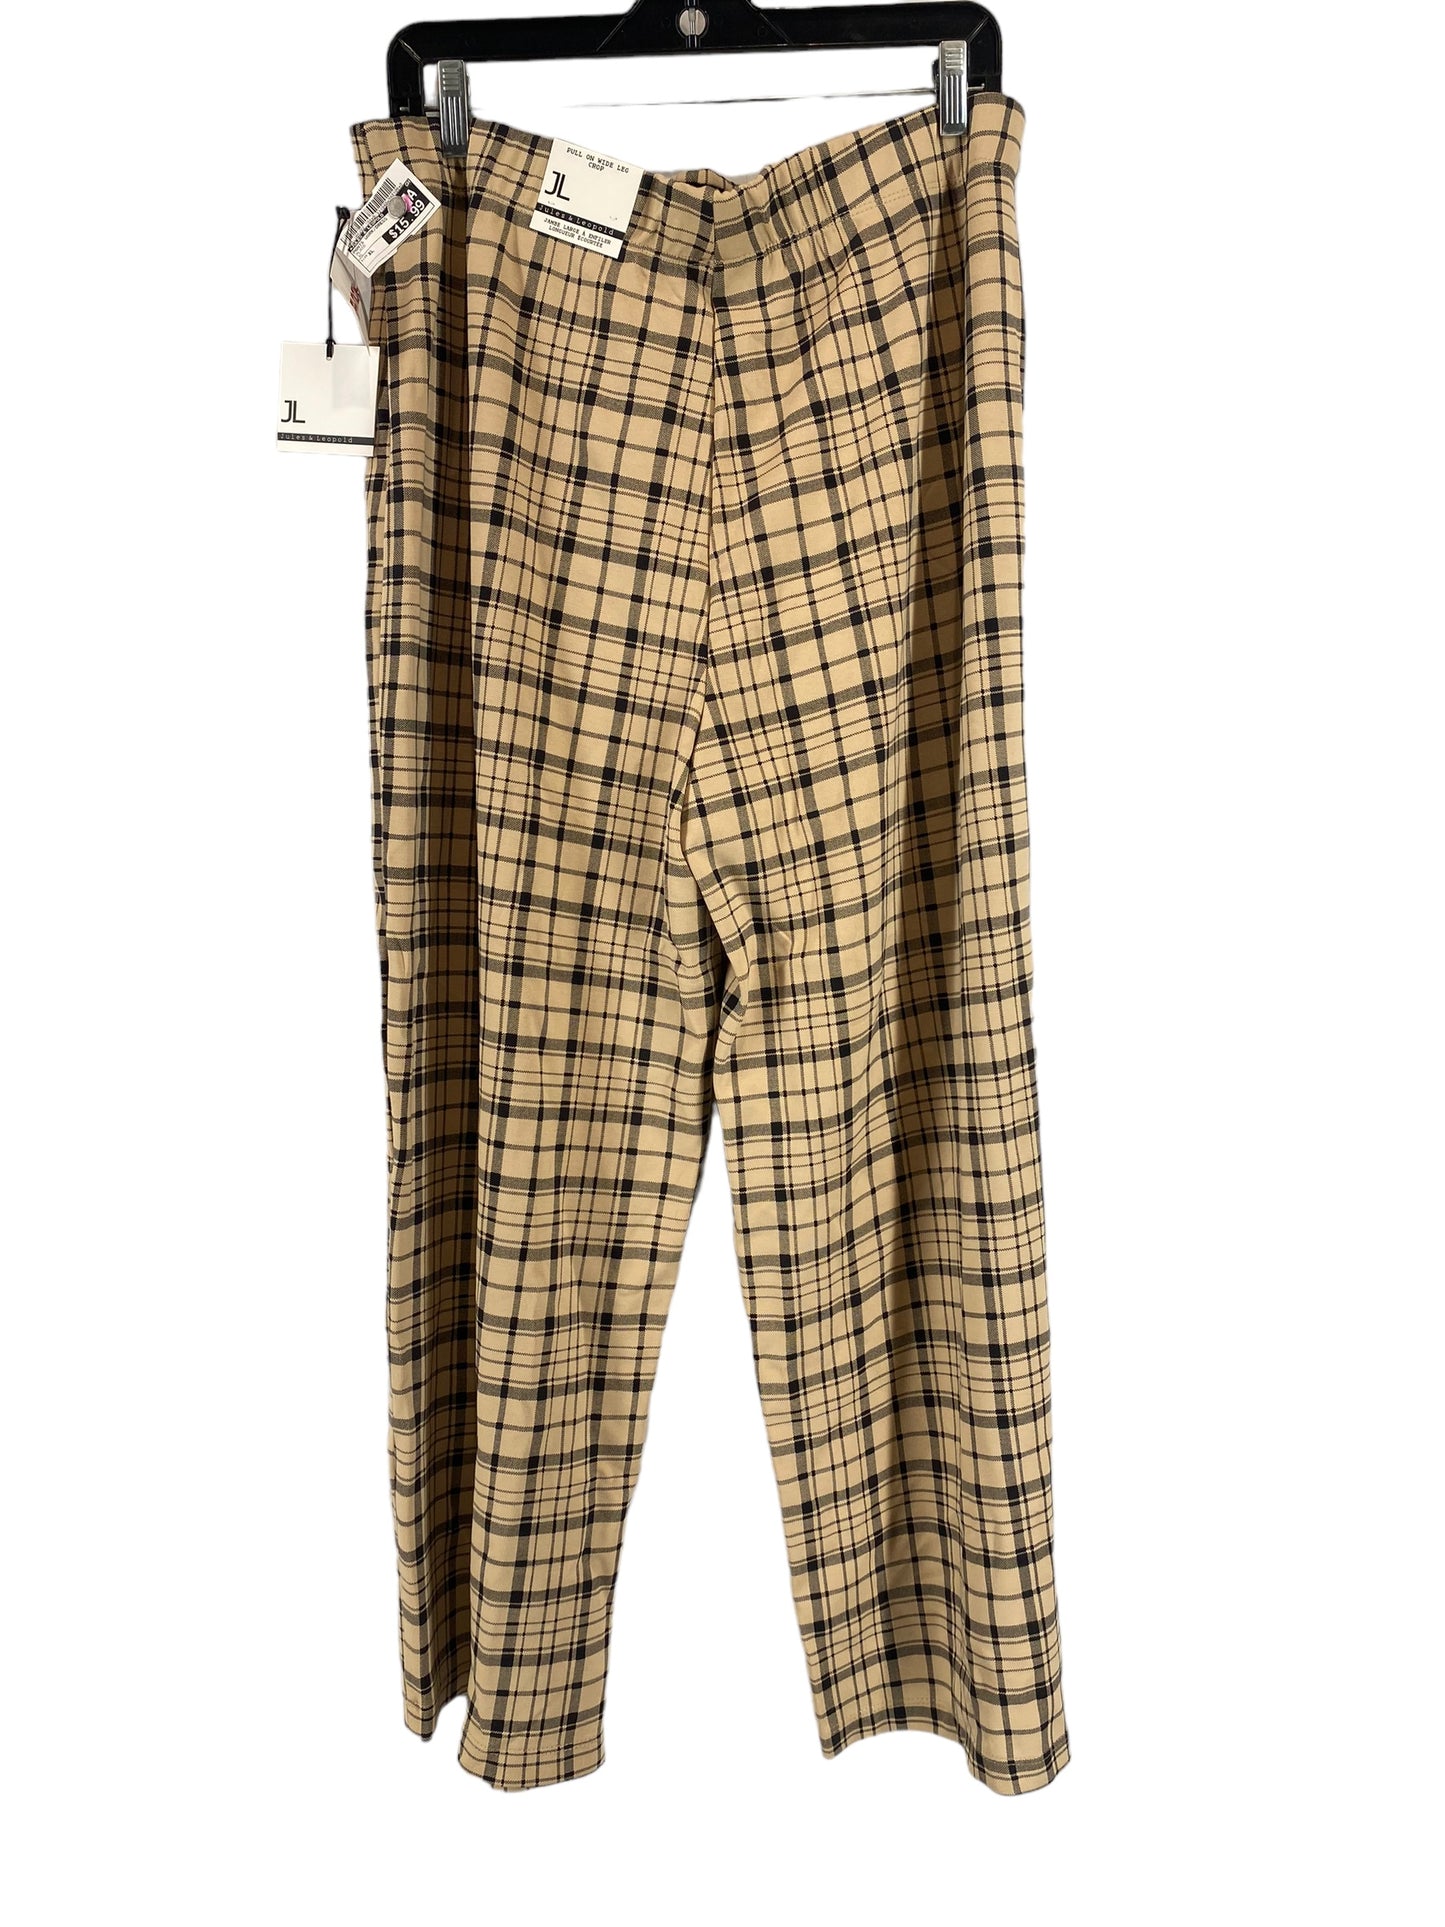 Pants Work/dress By Jules & Leopold  Size: Xl